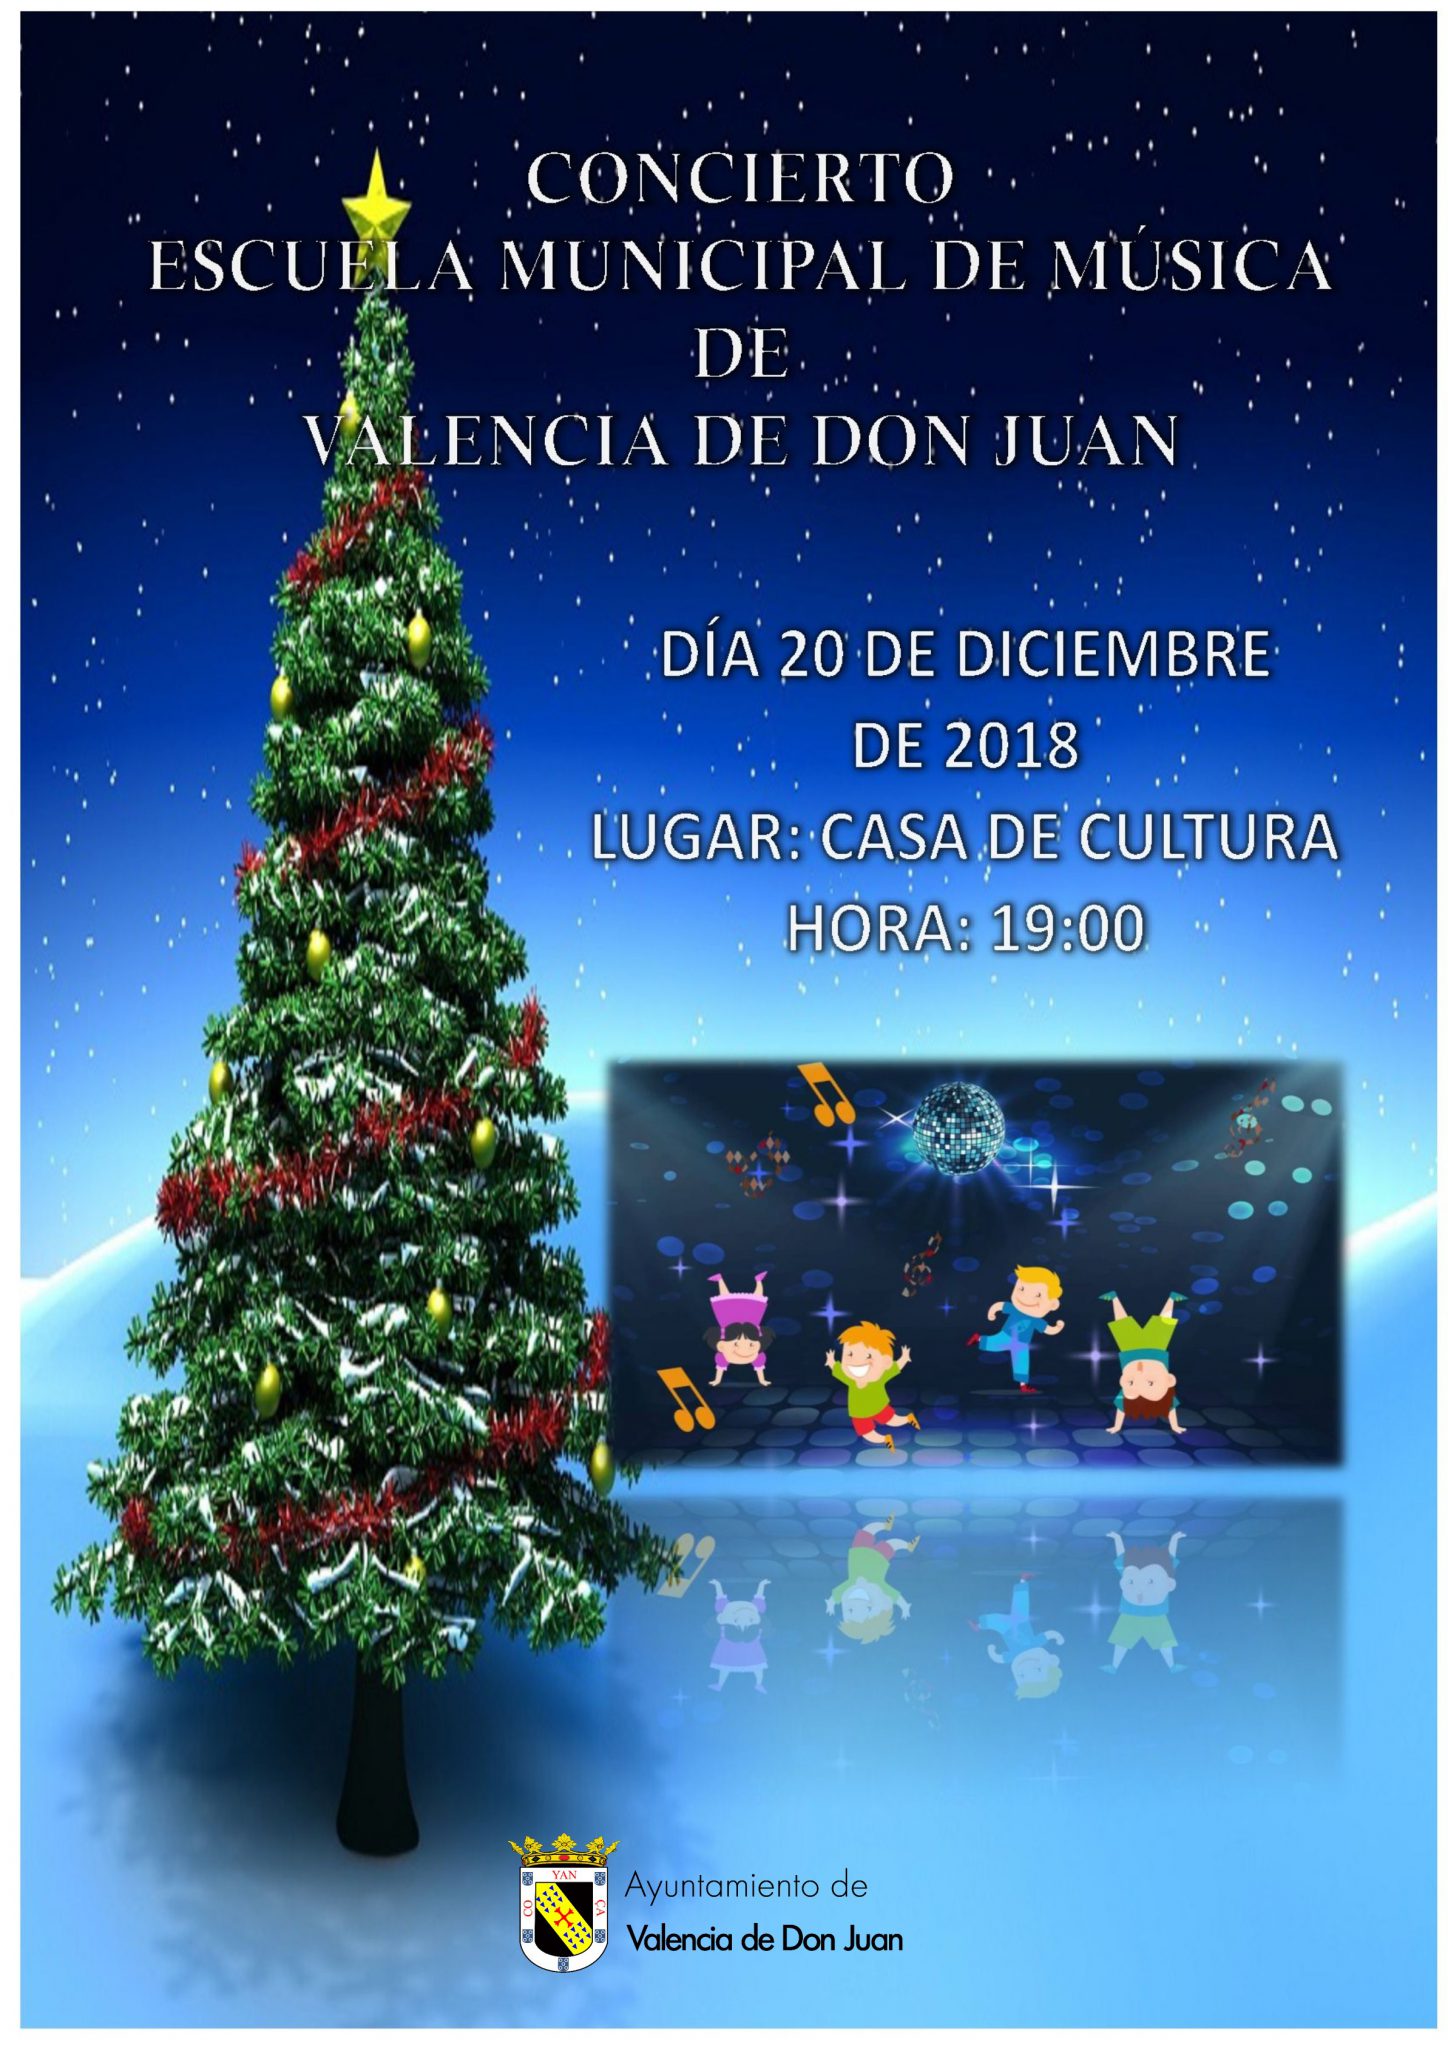 Concierto de la Escuela Municipal de Música de Valencia de Don Juan